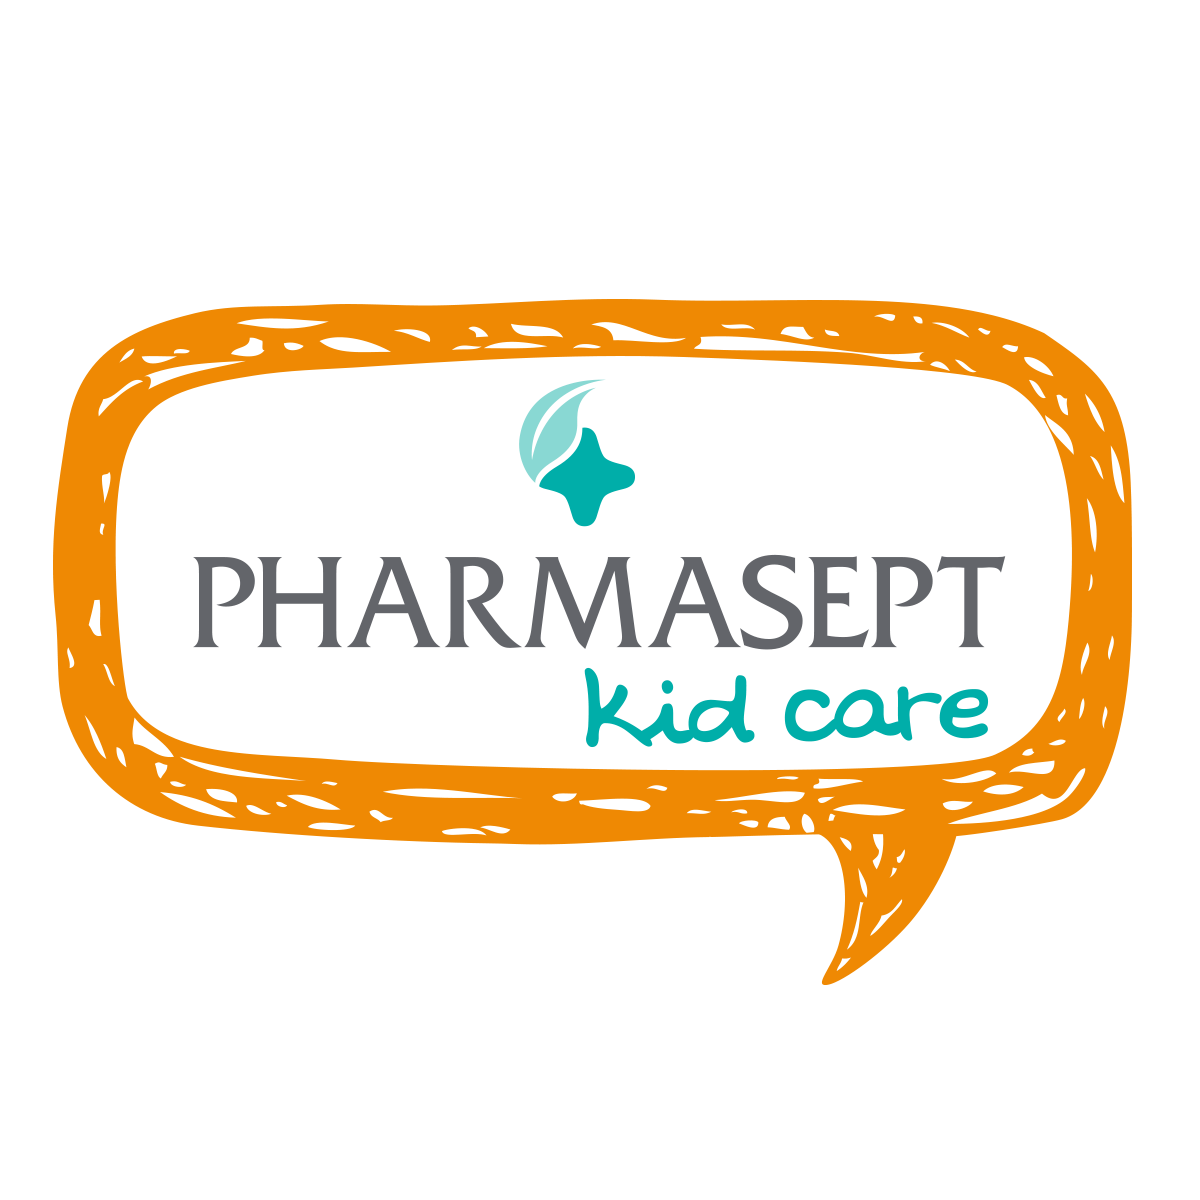 Με το x-lice η PHARMASEPT φροντίζει, ώστε γονείς & παιδιά να έχουν το “κεφάλι τους ήσυχο!”